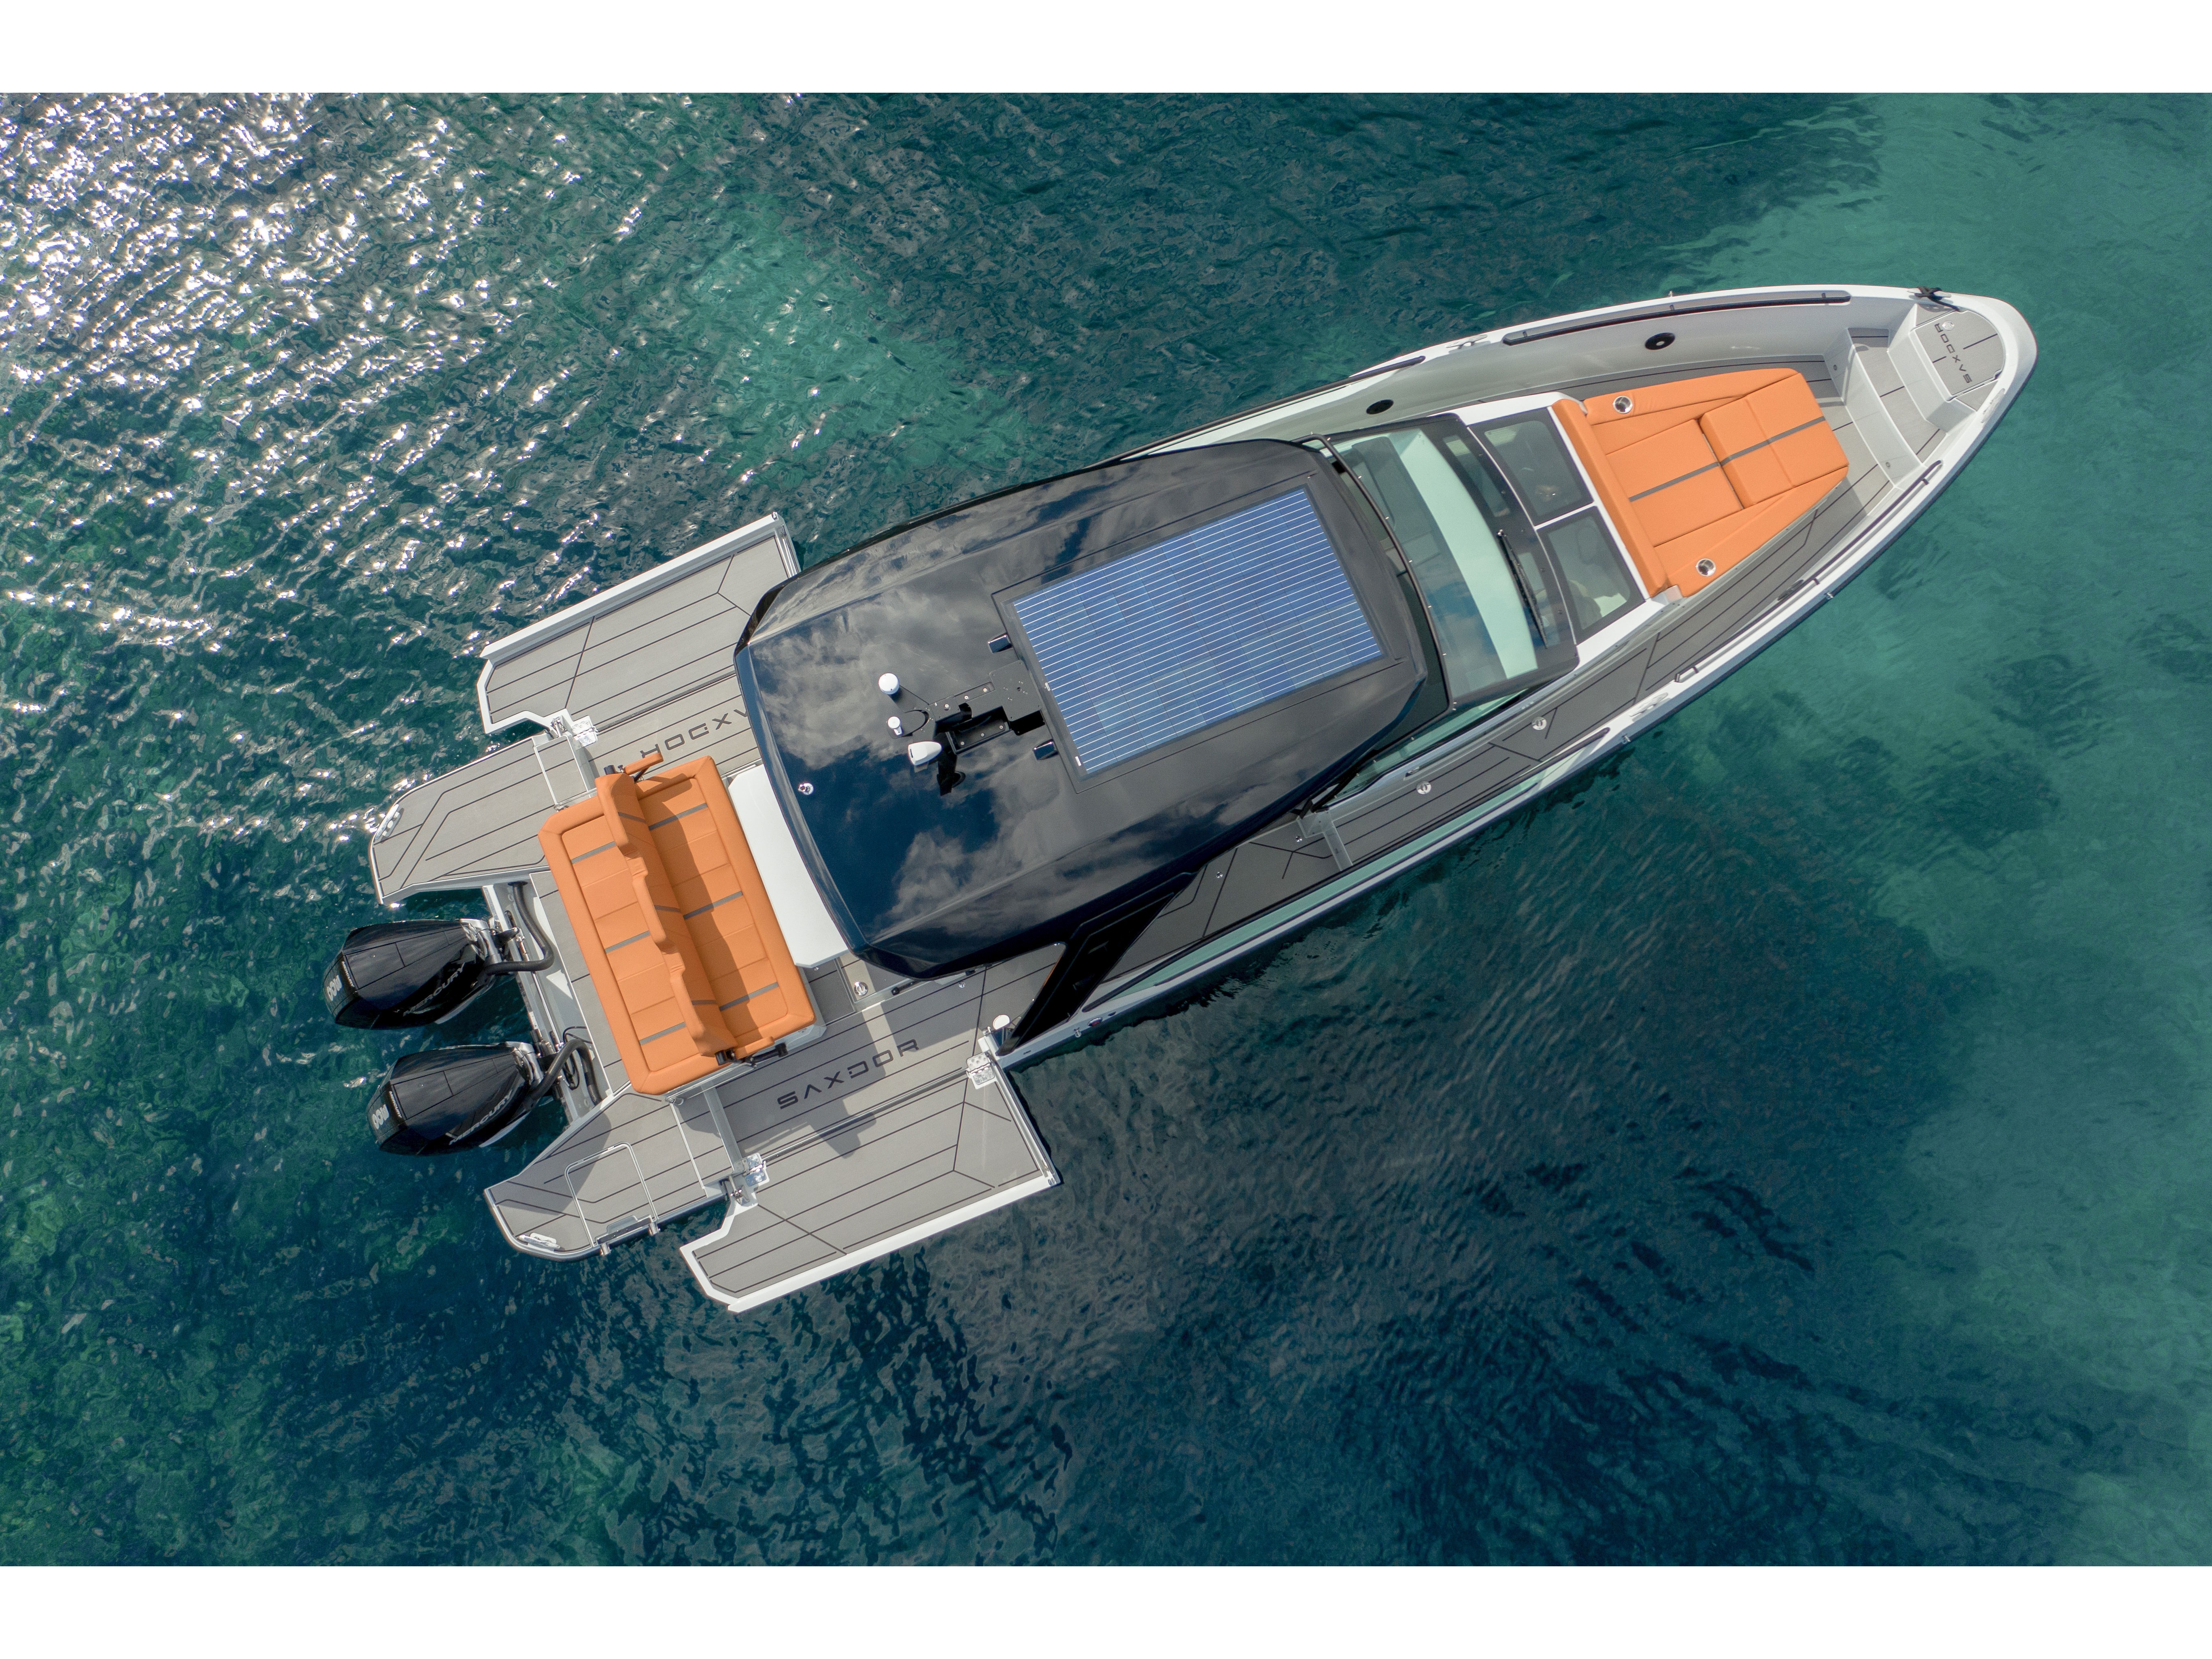 Saxdor 320 GTO - Motor Boat Charter Greece & Boat hire in Greece Cyclades Islands Paros Paros Paros 1